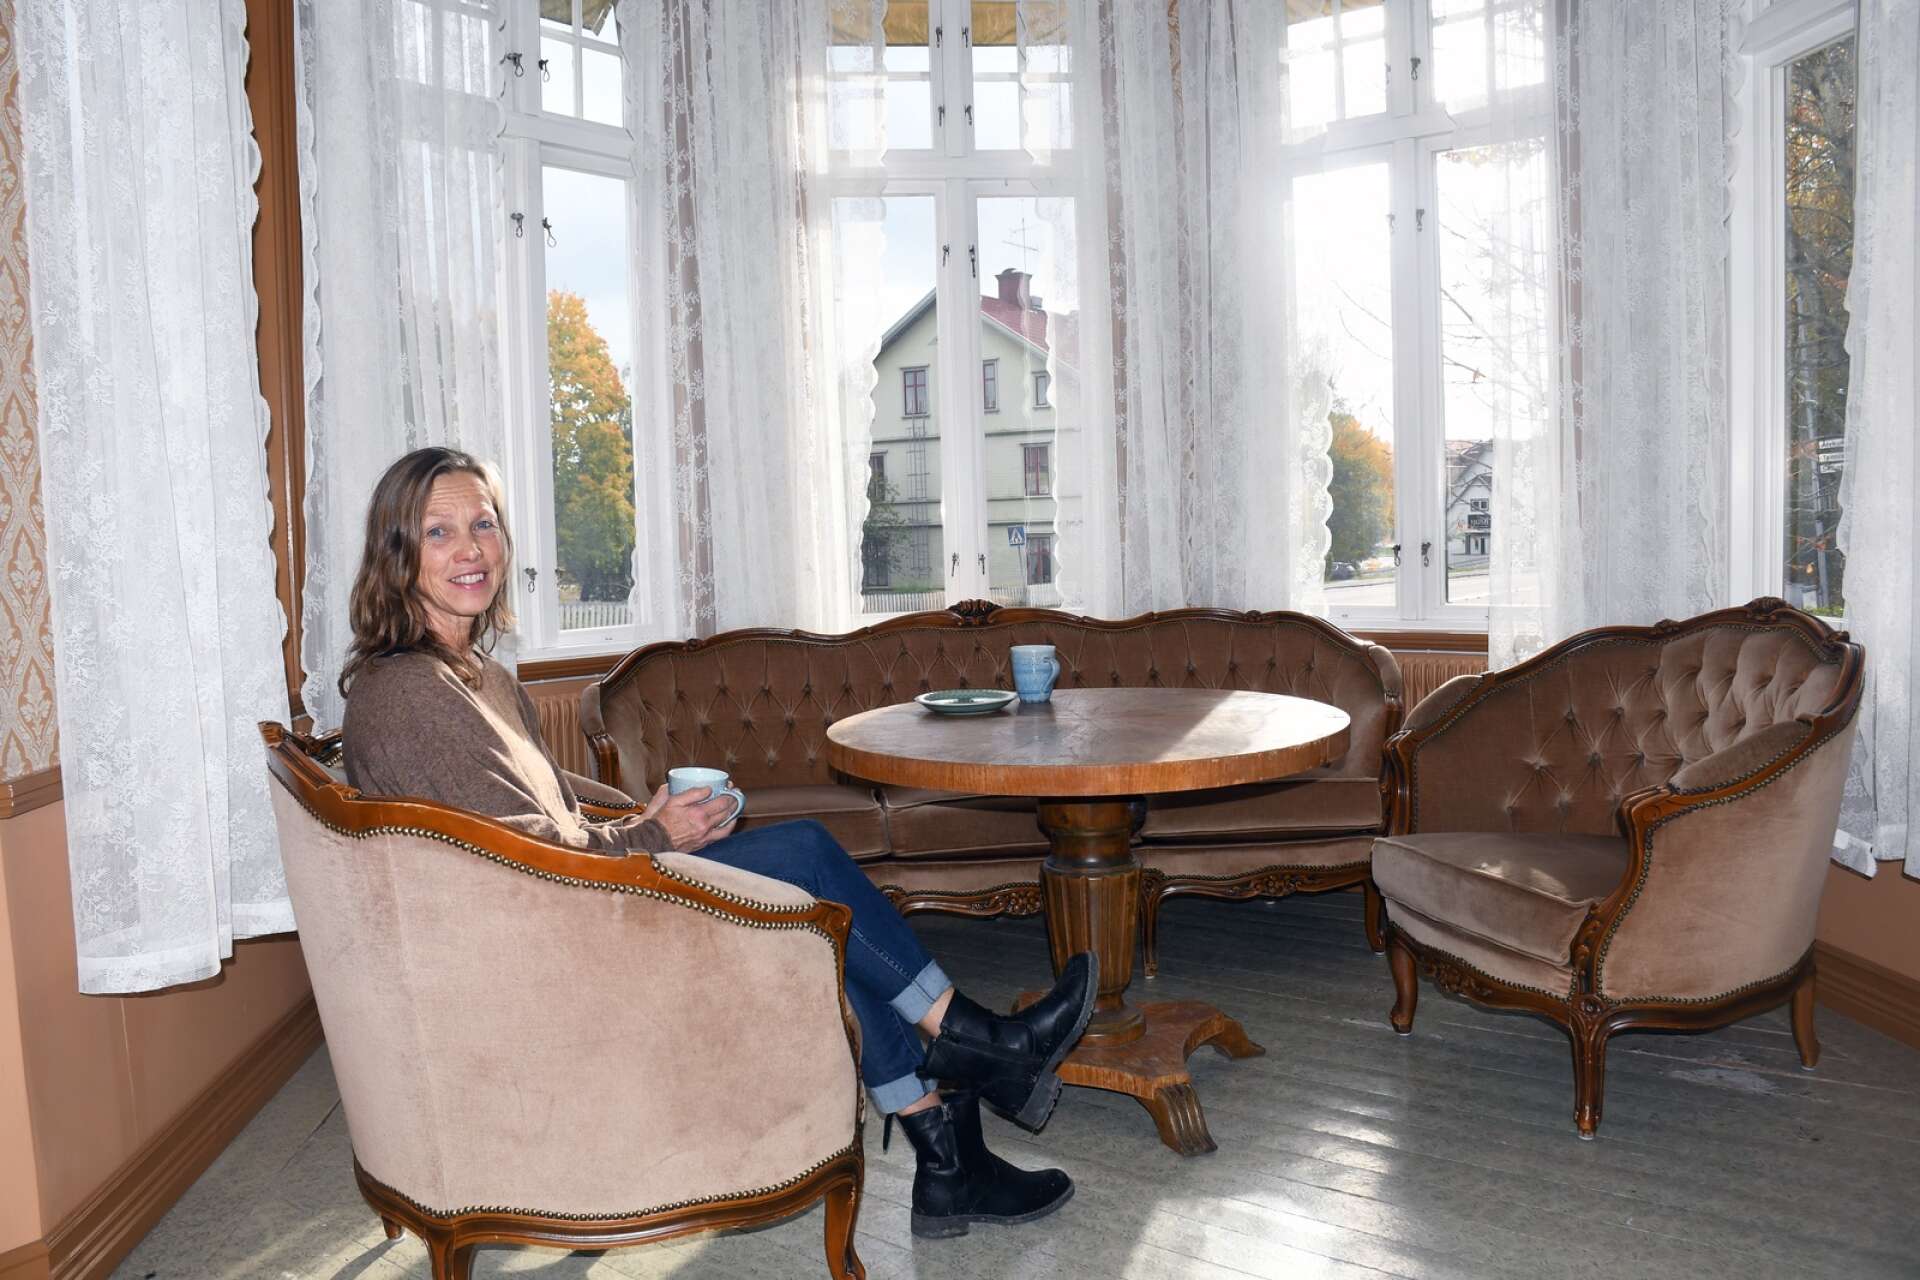 Det andra caféet som startade i Sunne var Café Villa Helios, där gäster tas emot i denna gamla, vackra miljö. Ägare är Annnika Ceder Eriksson. 